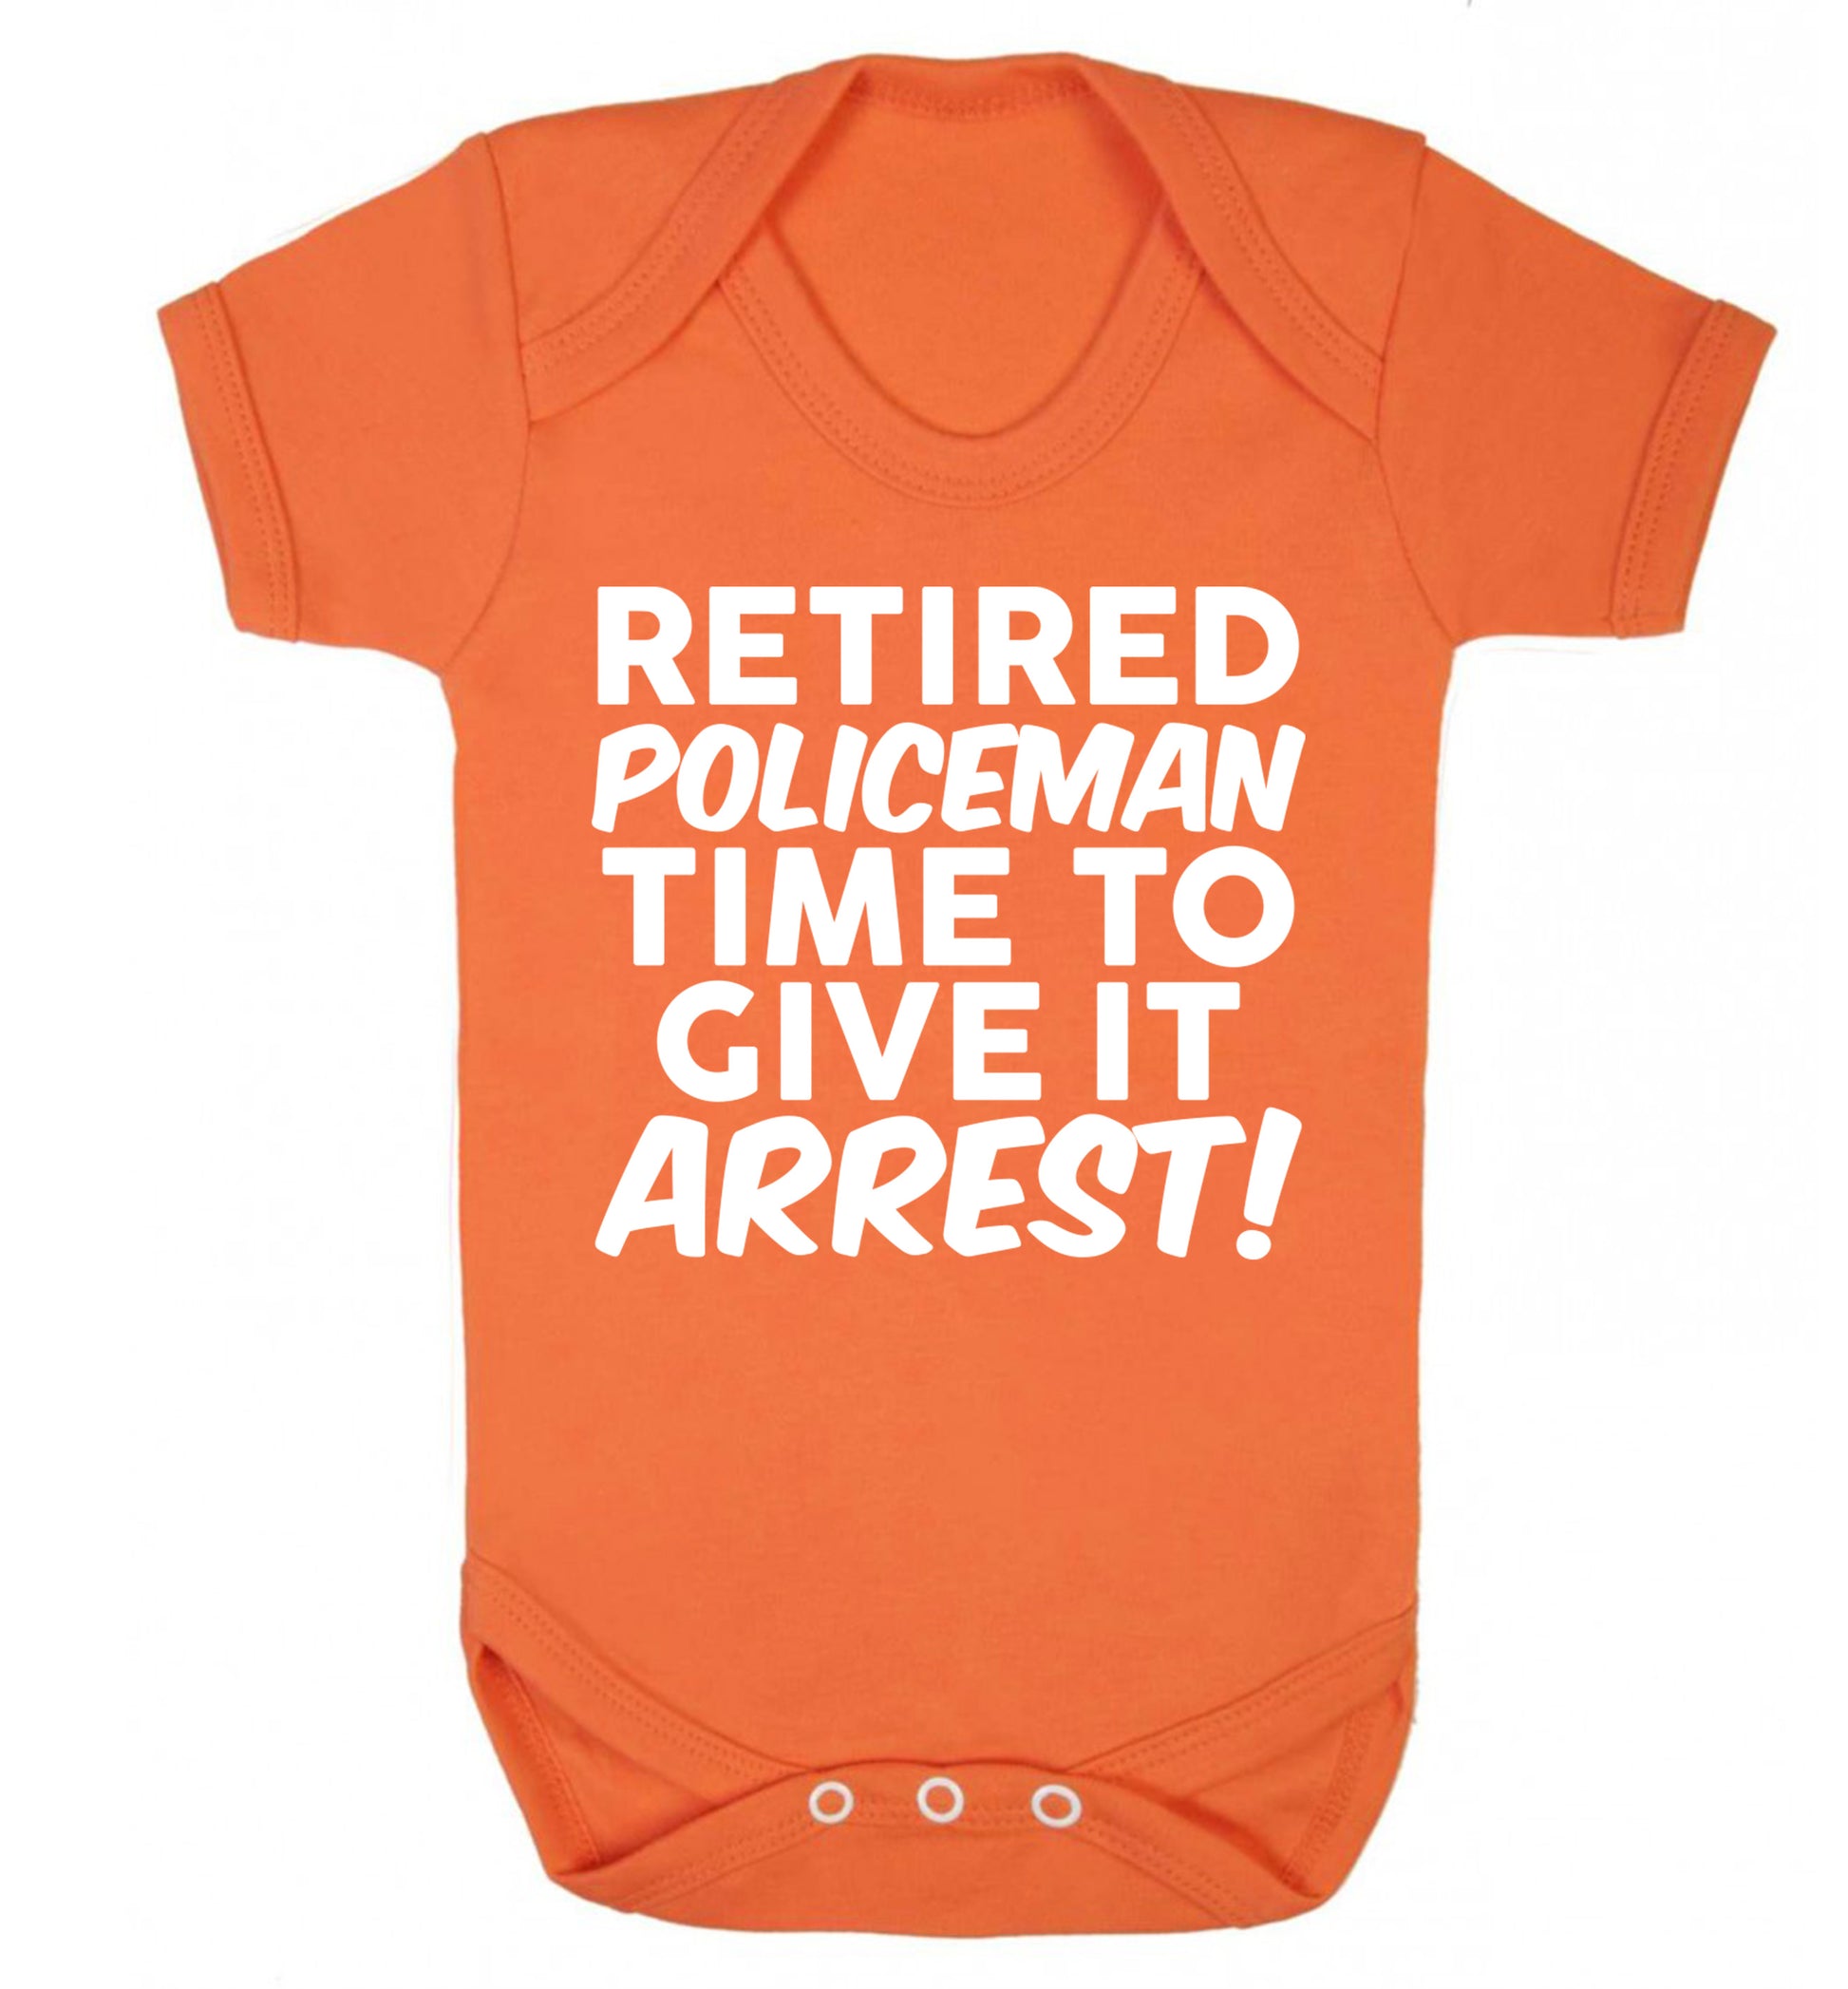 Retired policeman give it arresst! Baby Vest orange 18-24 months